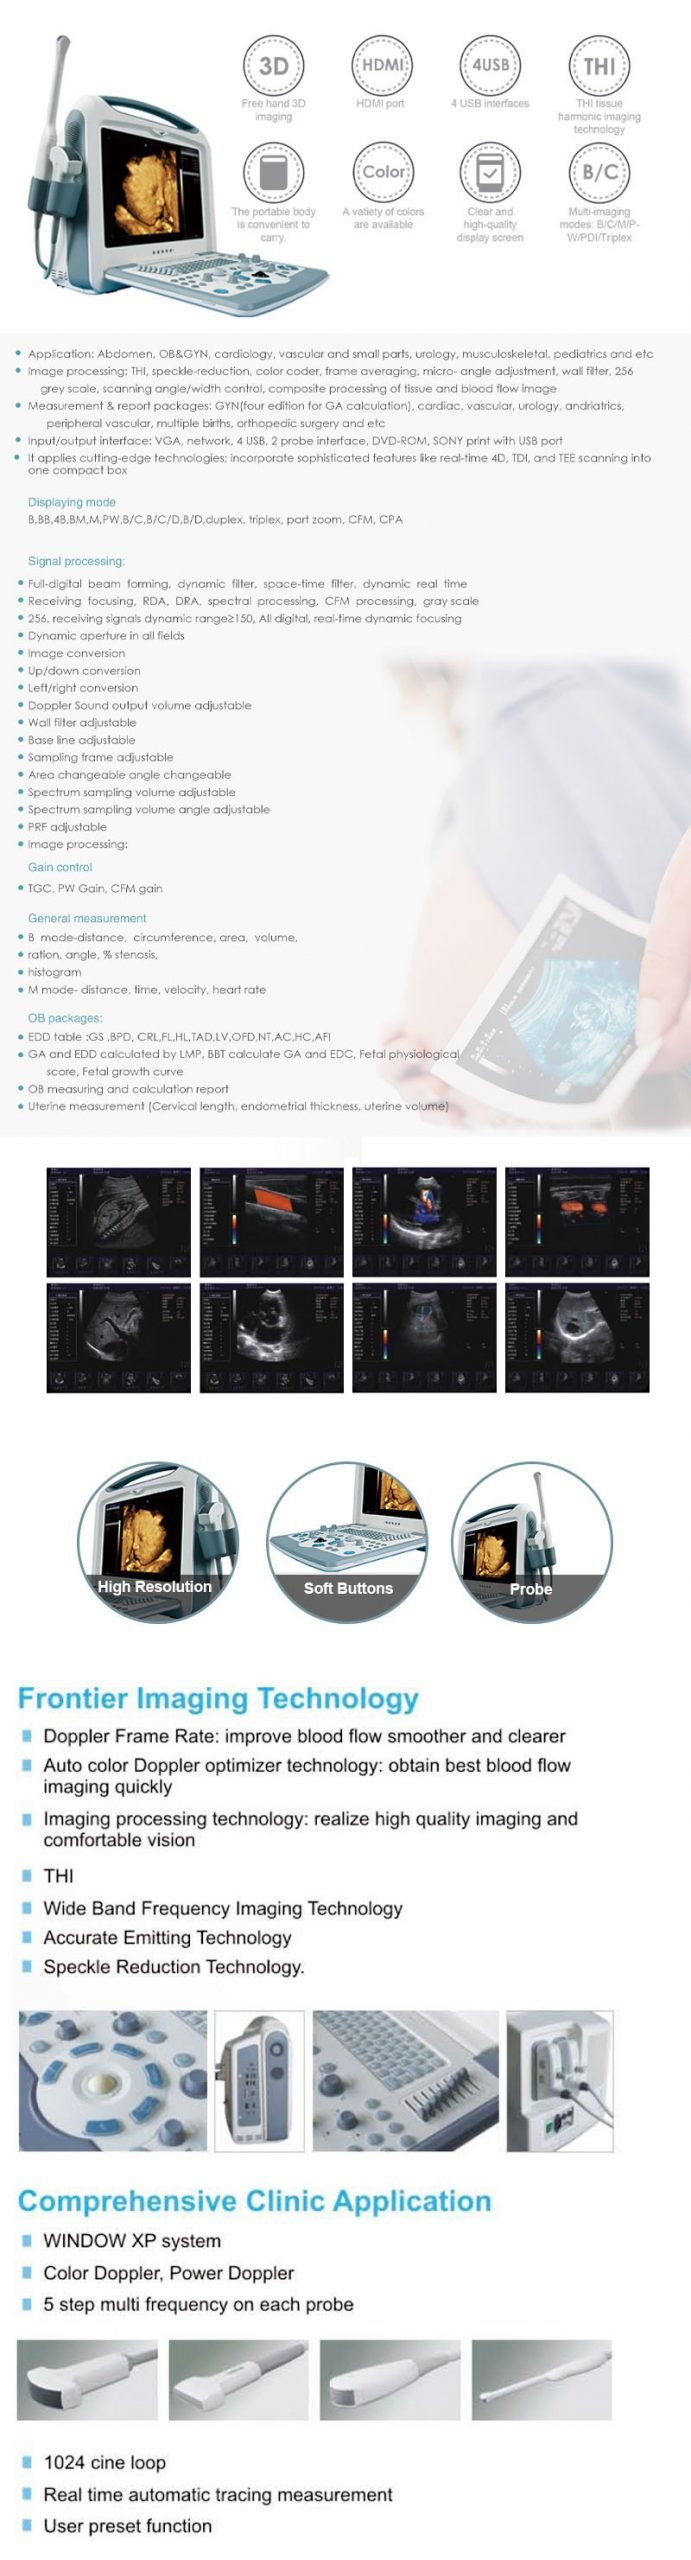 Medical Device S8i Color Portable Ultrasound Scanner